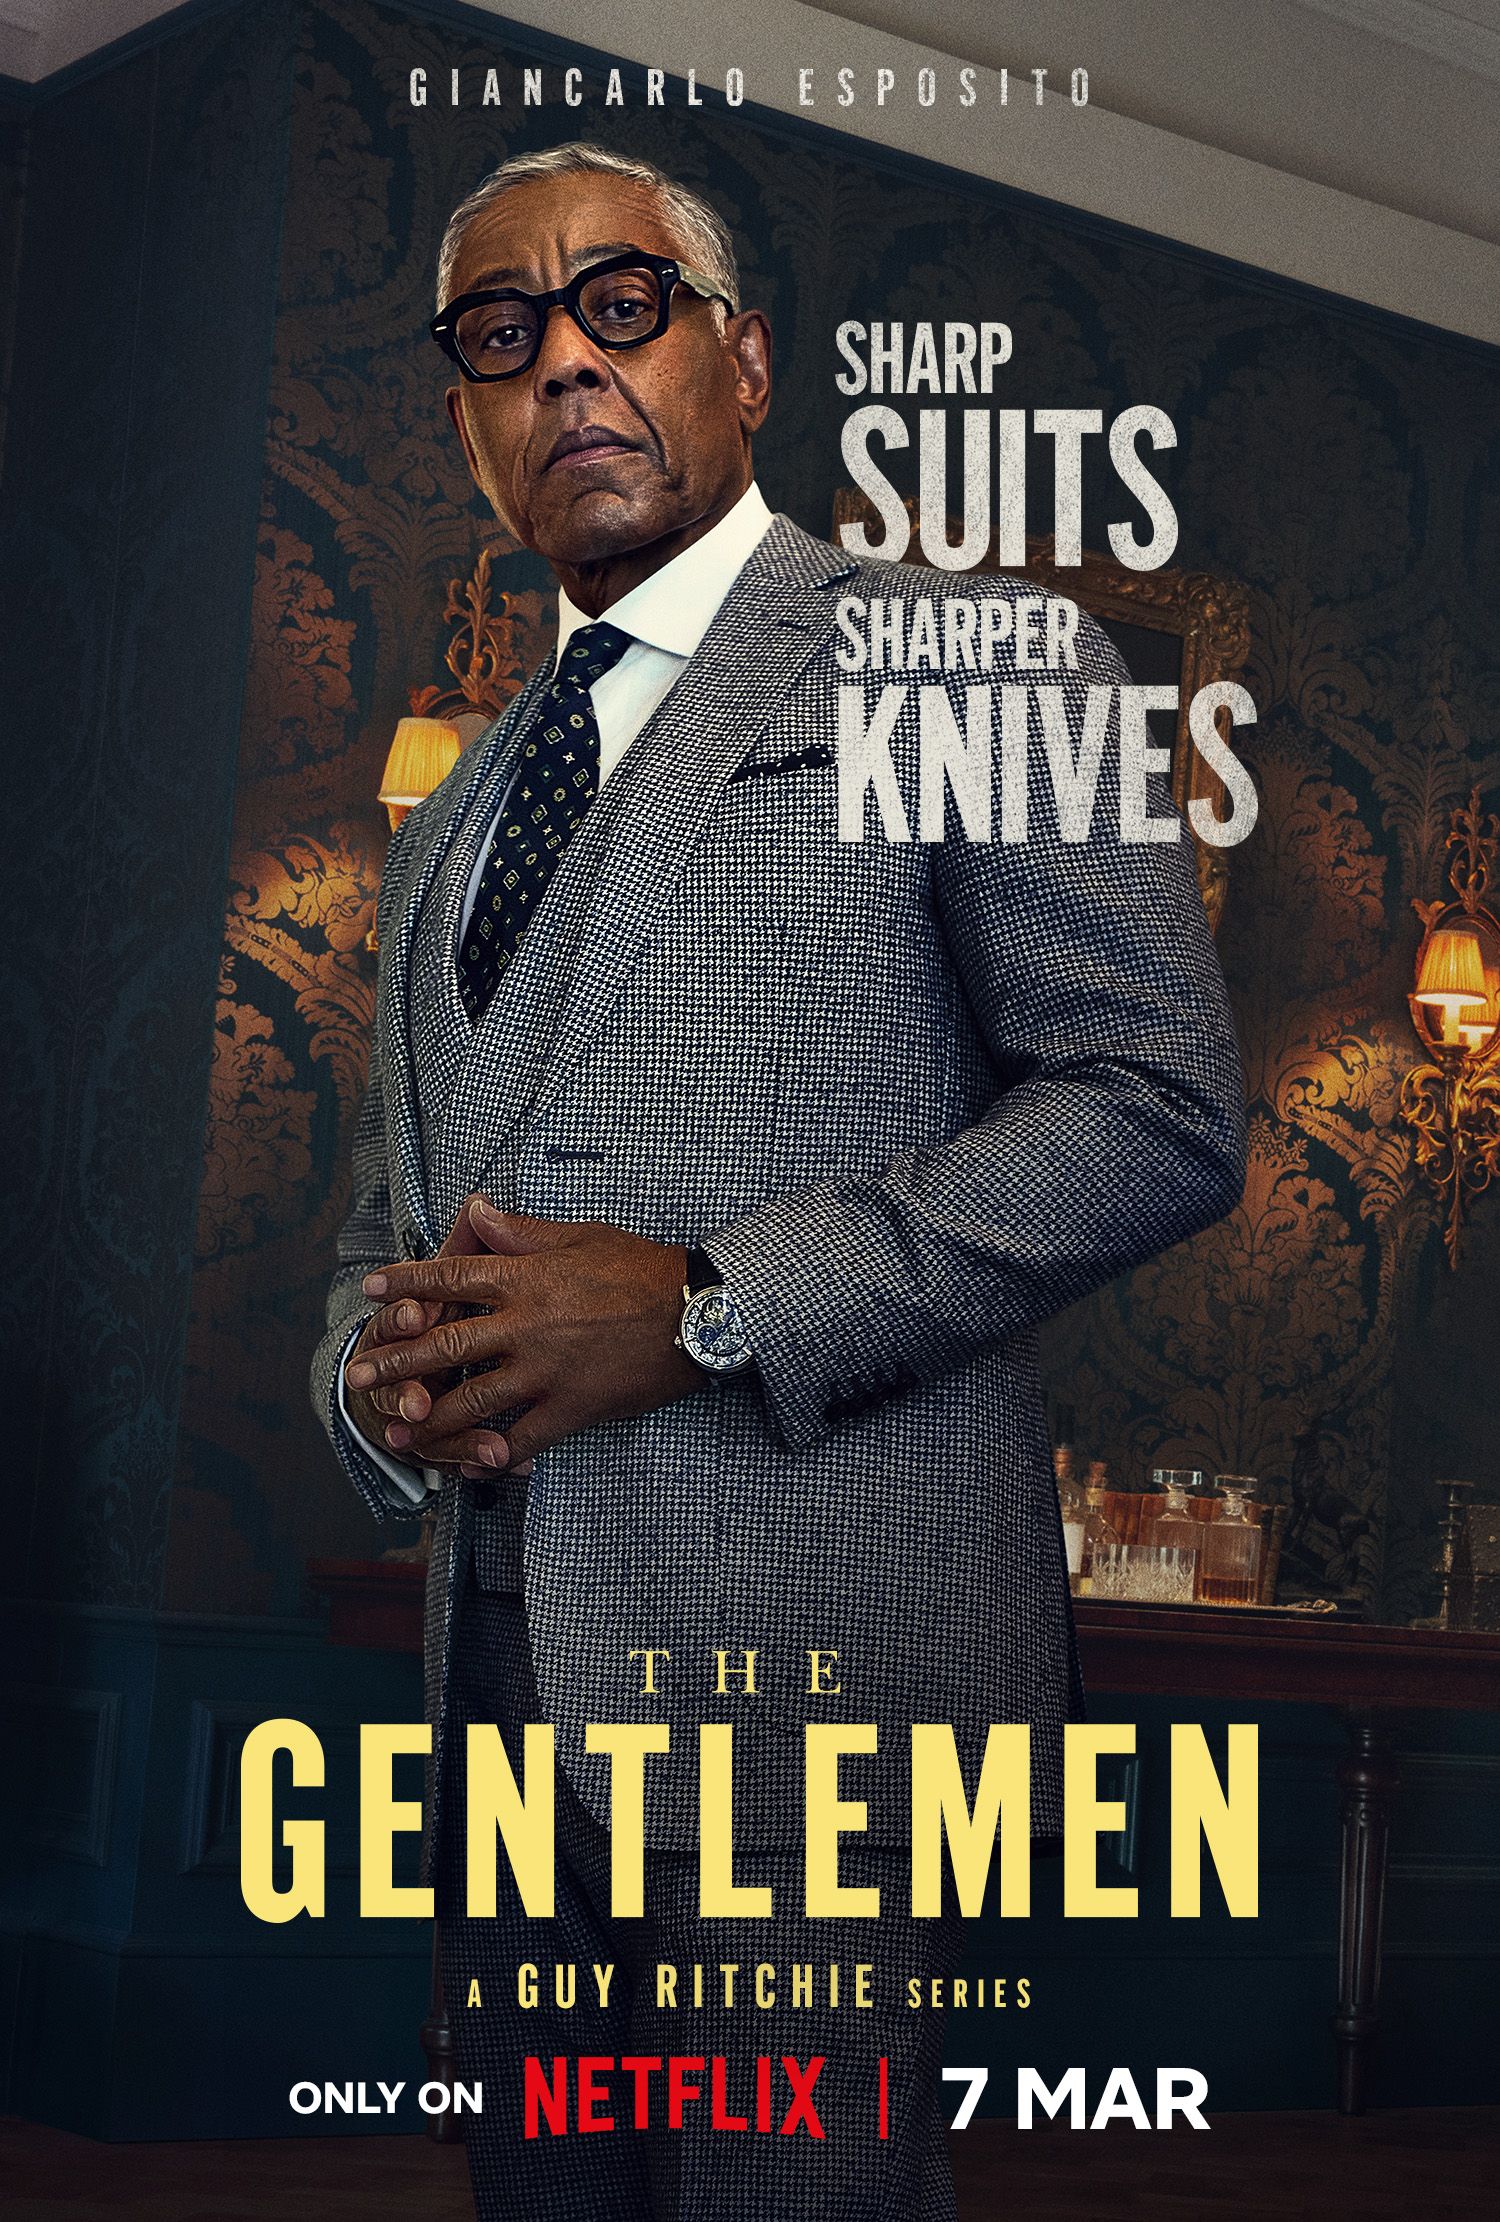 Guy Ritchie's The Gentlemen Spinoff Gets Netflix Release Date